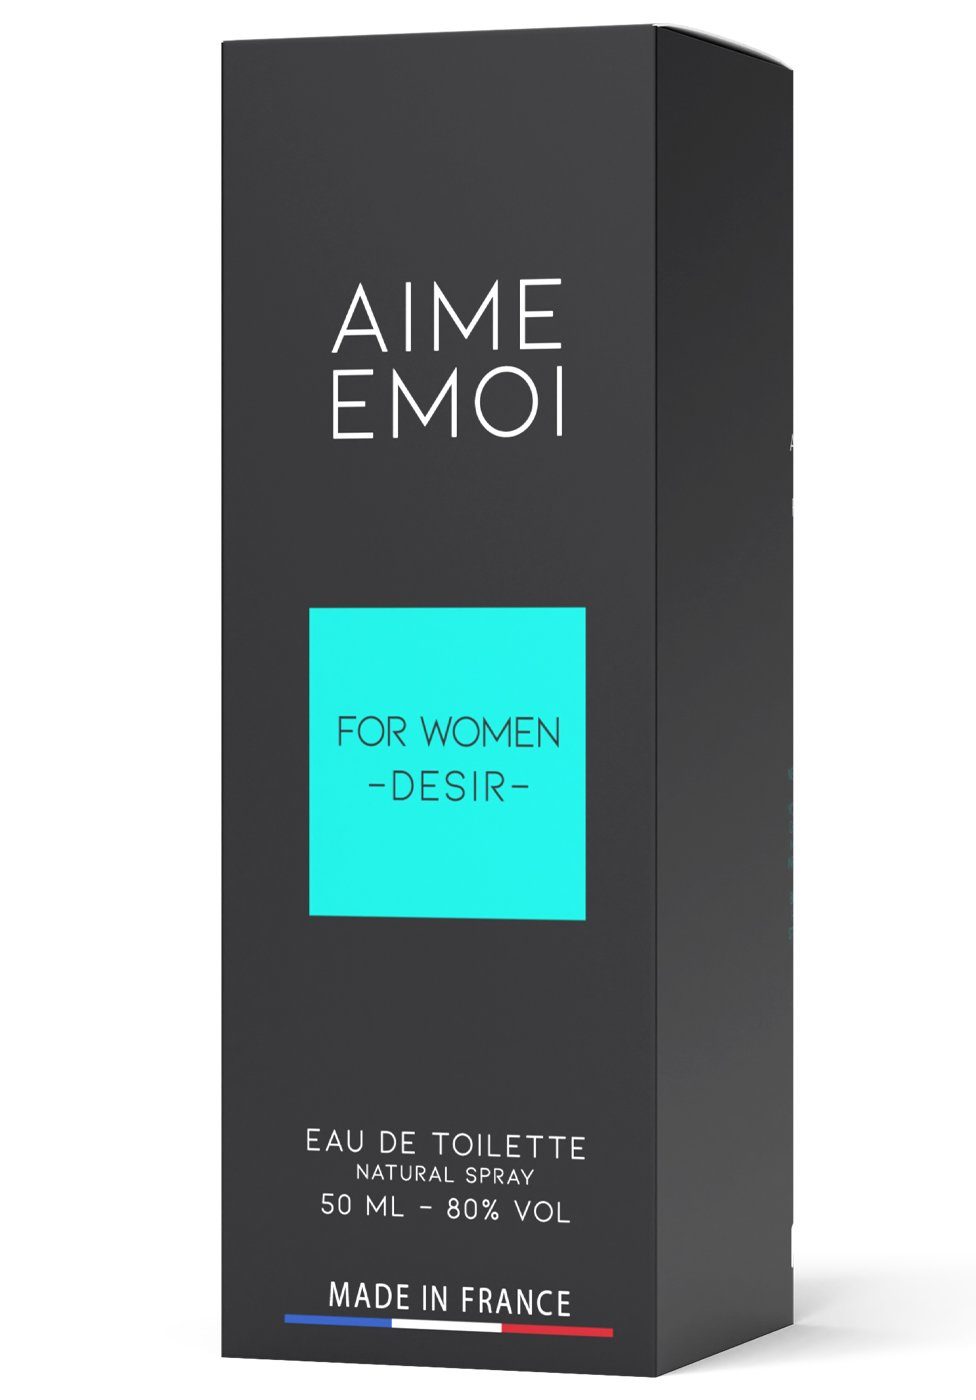 Ruf Eau de Parfum Aime Femme - Eau de Pour Toilette Emoi